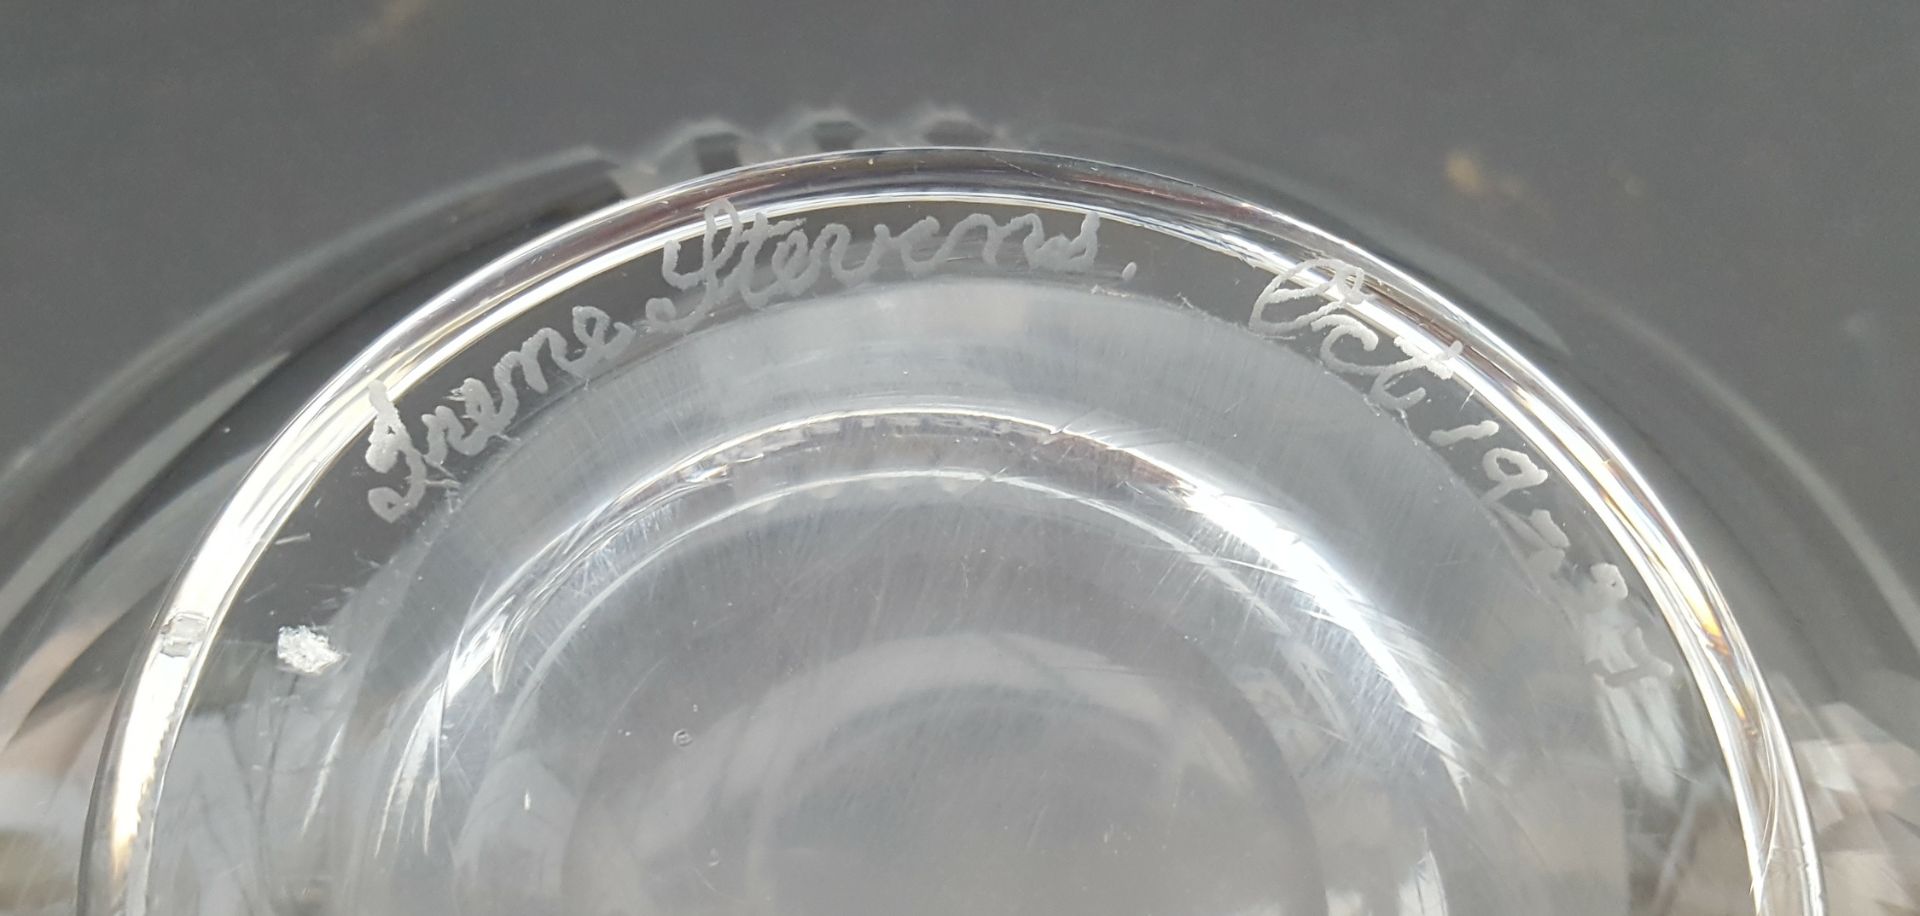 Antique Vintage Irene Stevens Webb Corbett Glass Bowl 1937 - Image 2 of 2